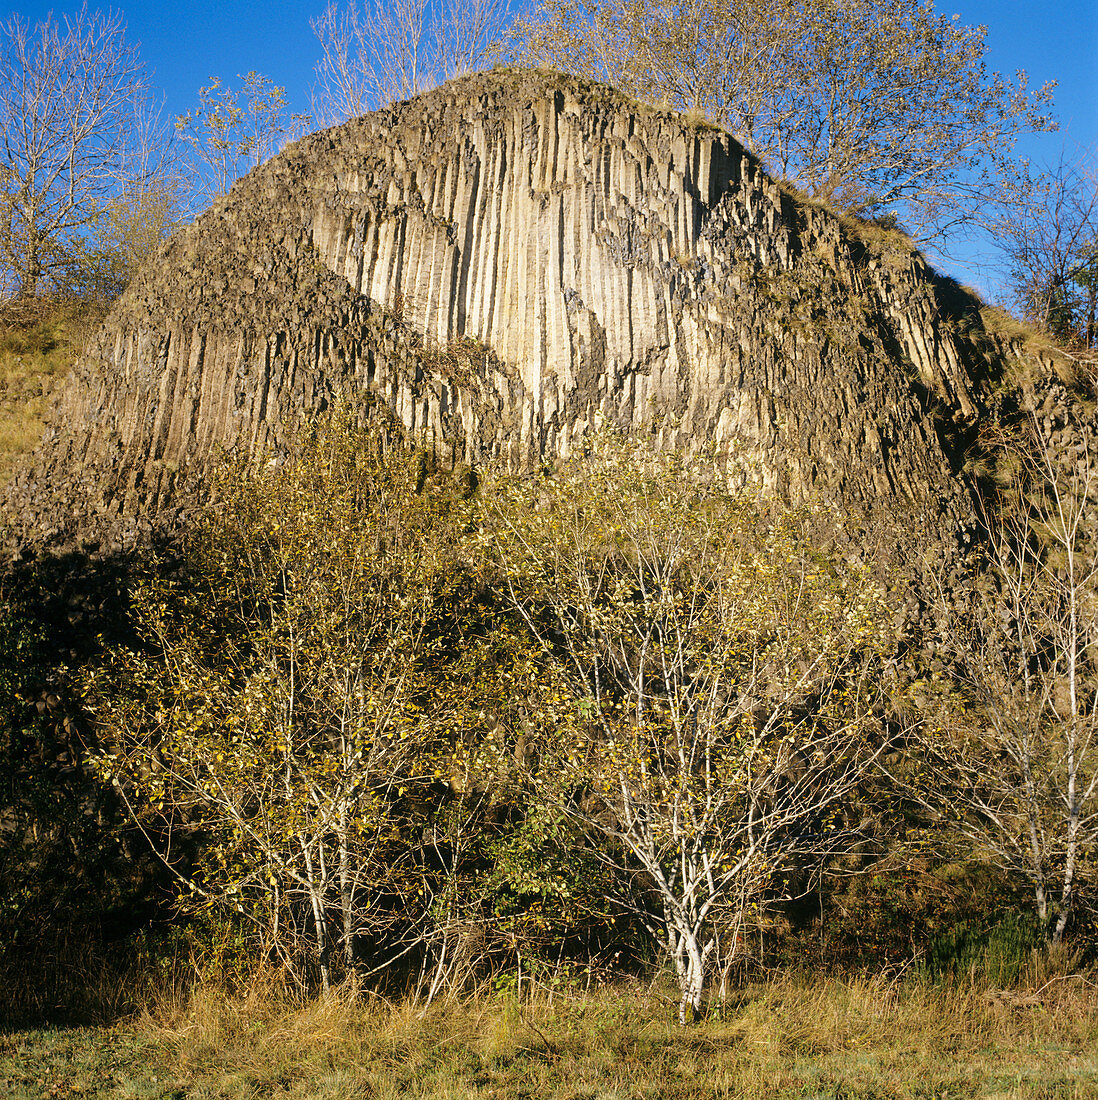 Weathered columnar basalt formation